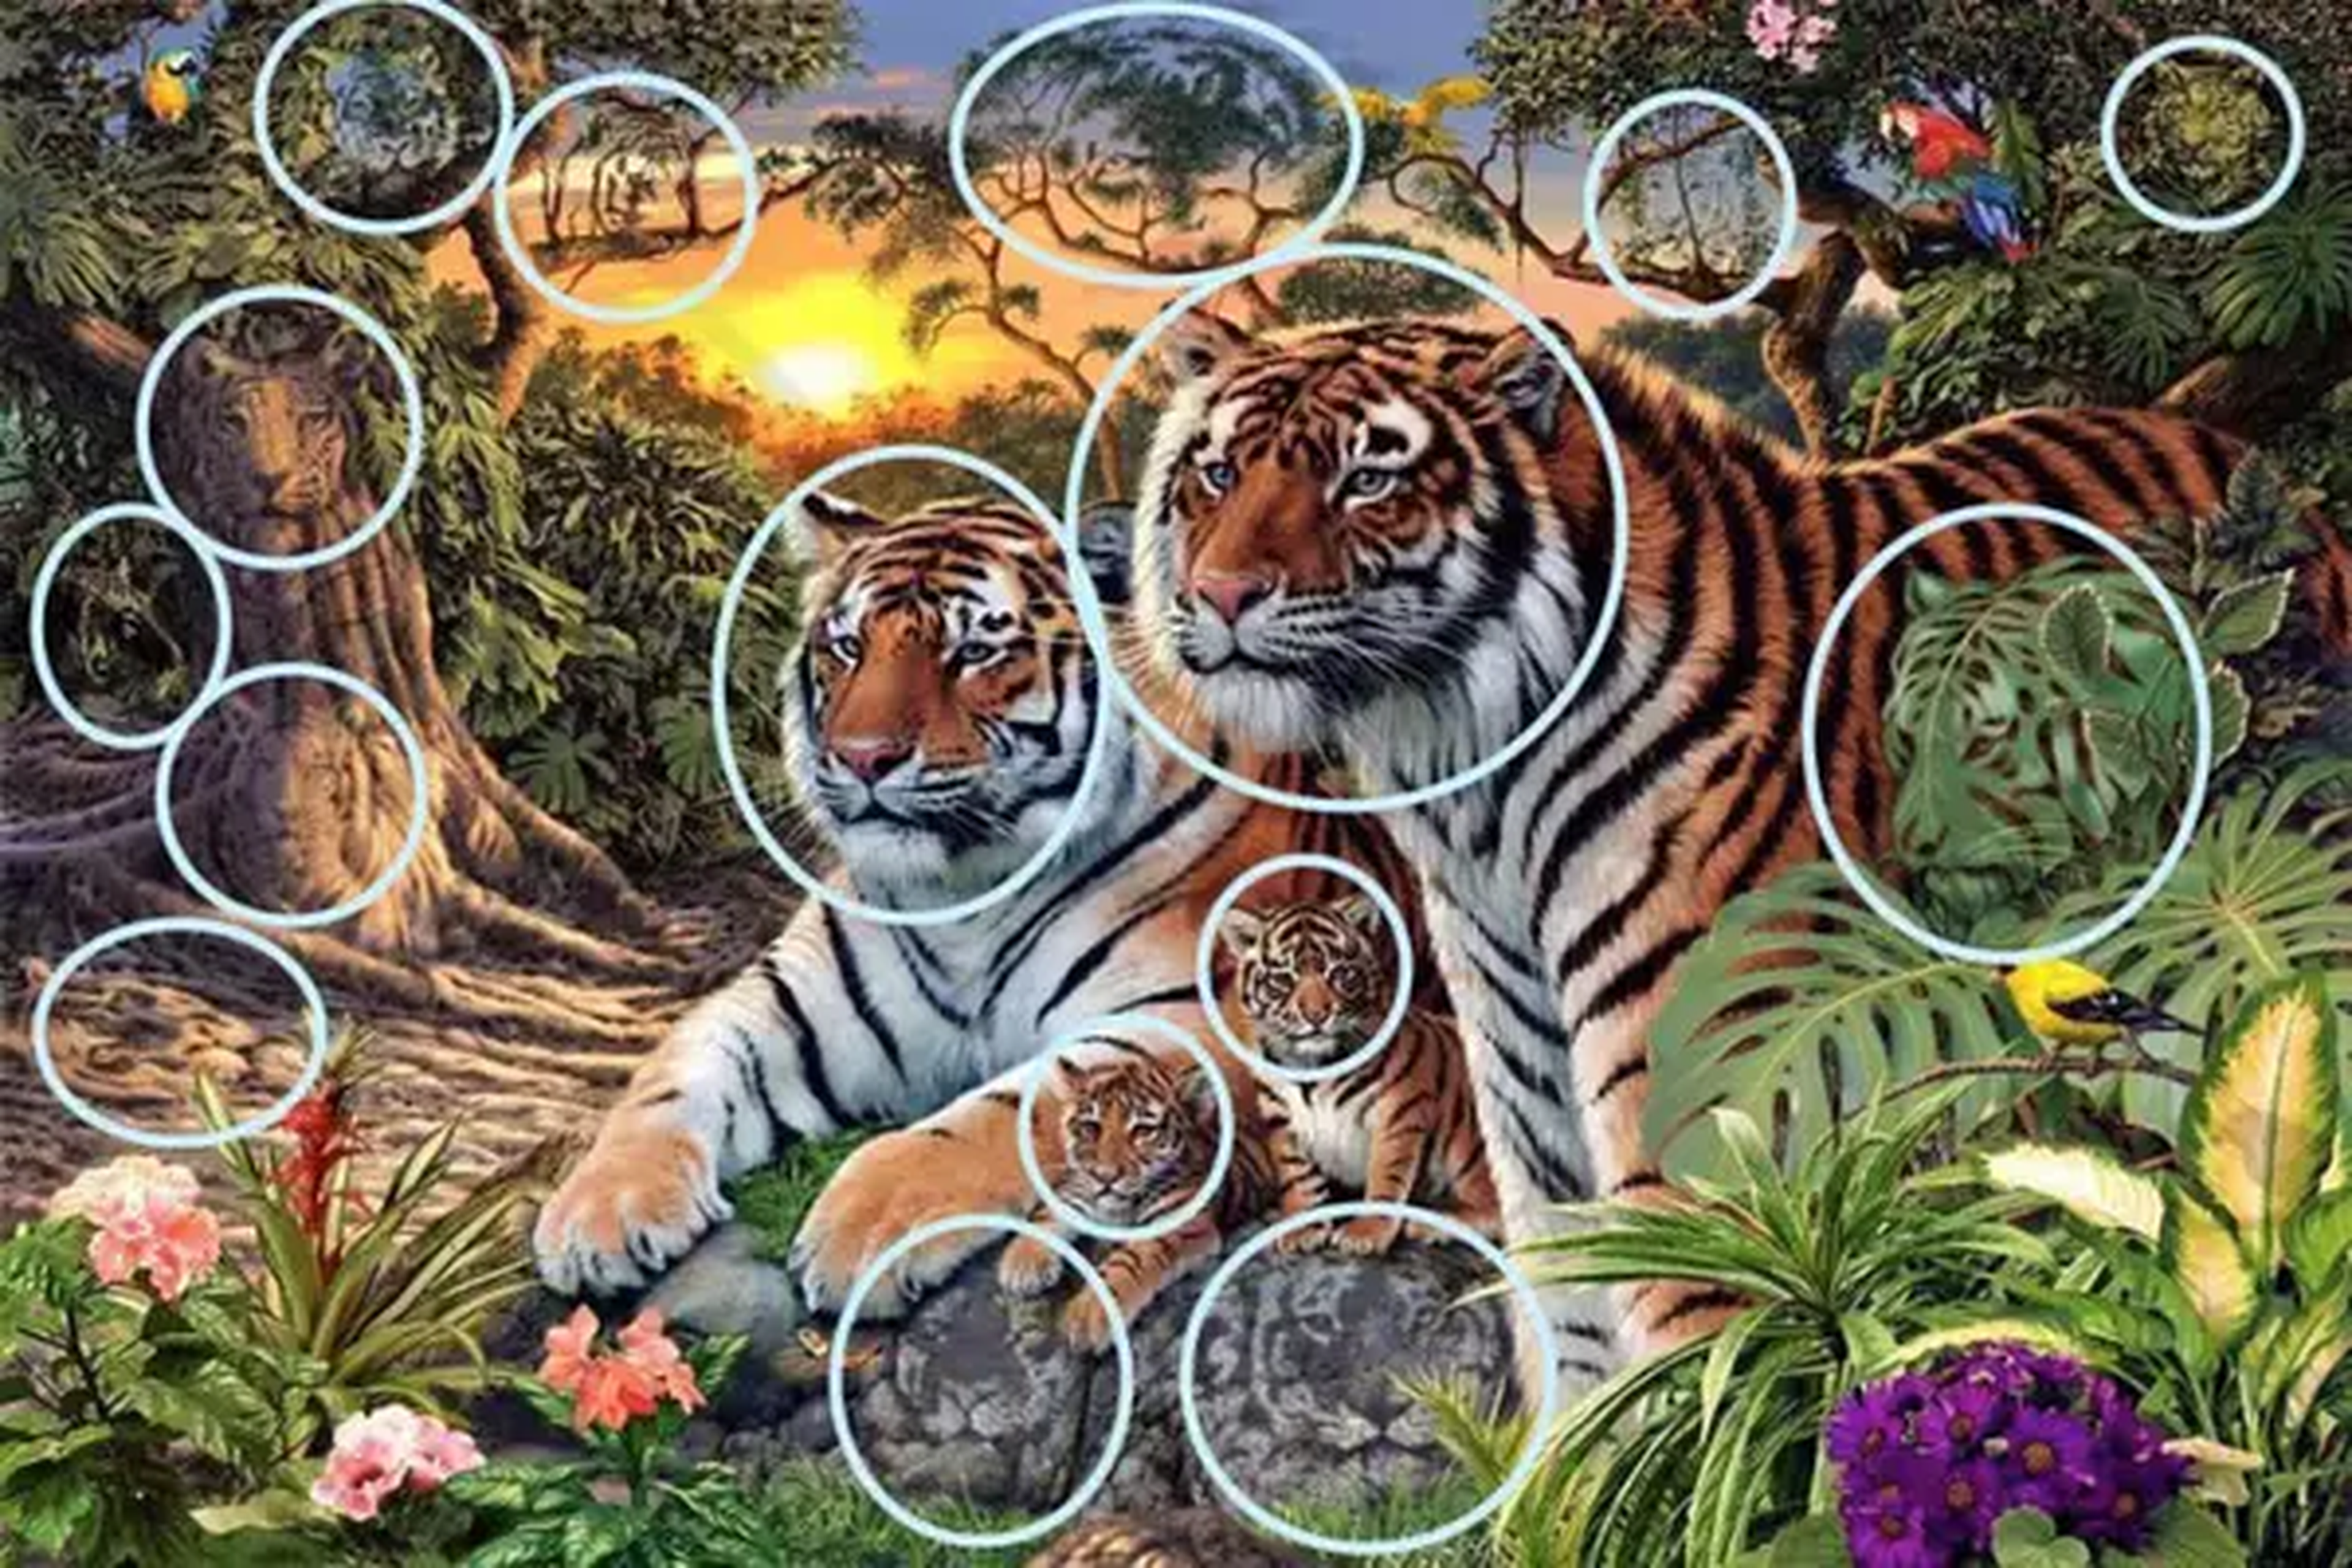 Cuántos tigres hay en la imagen